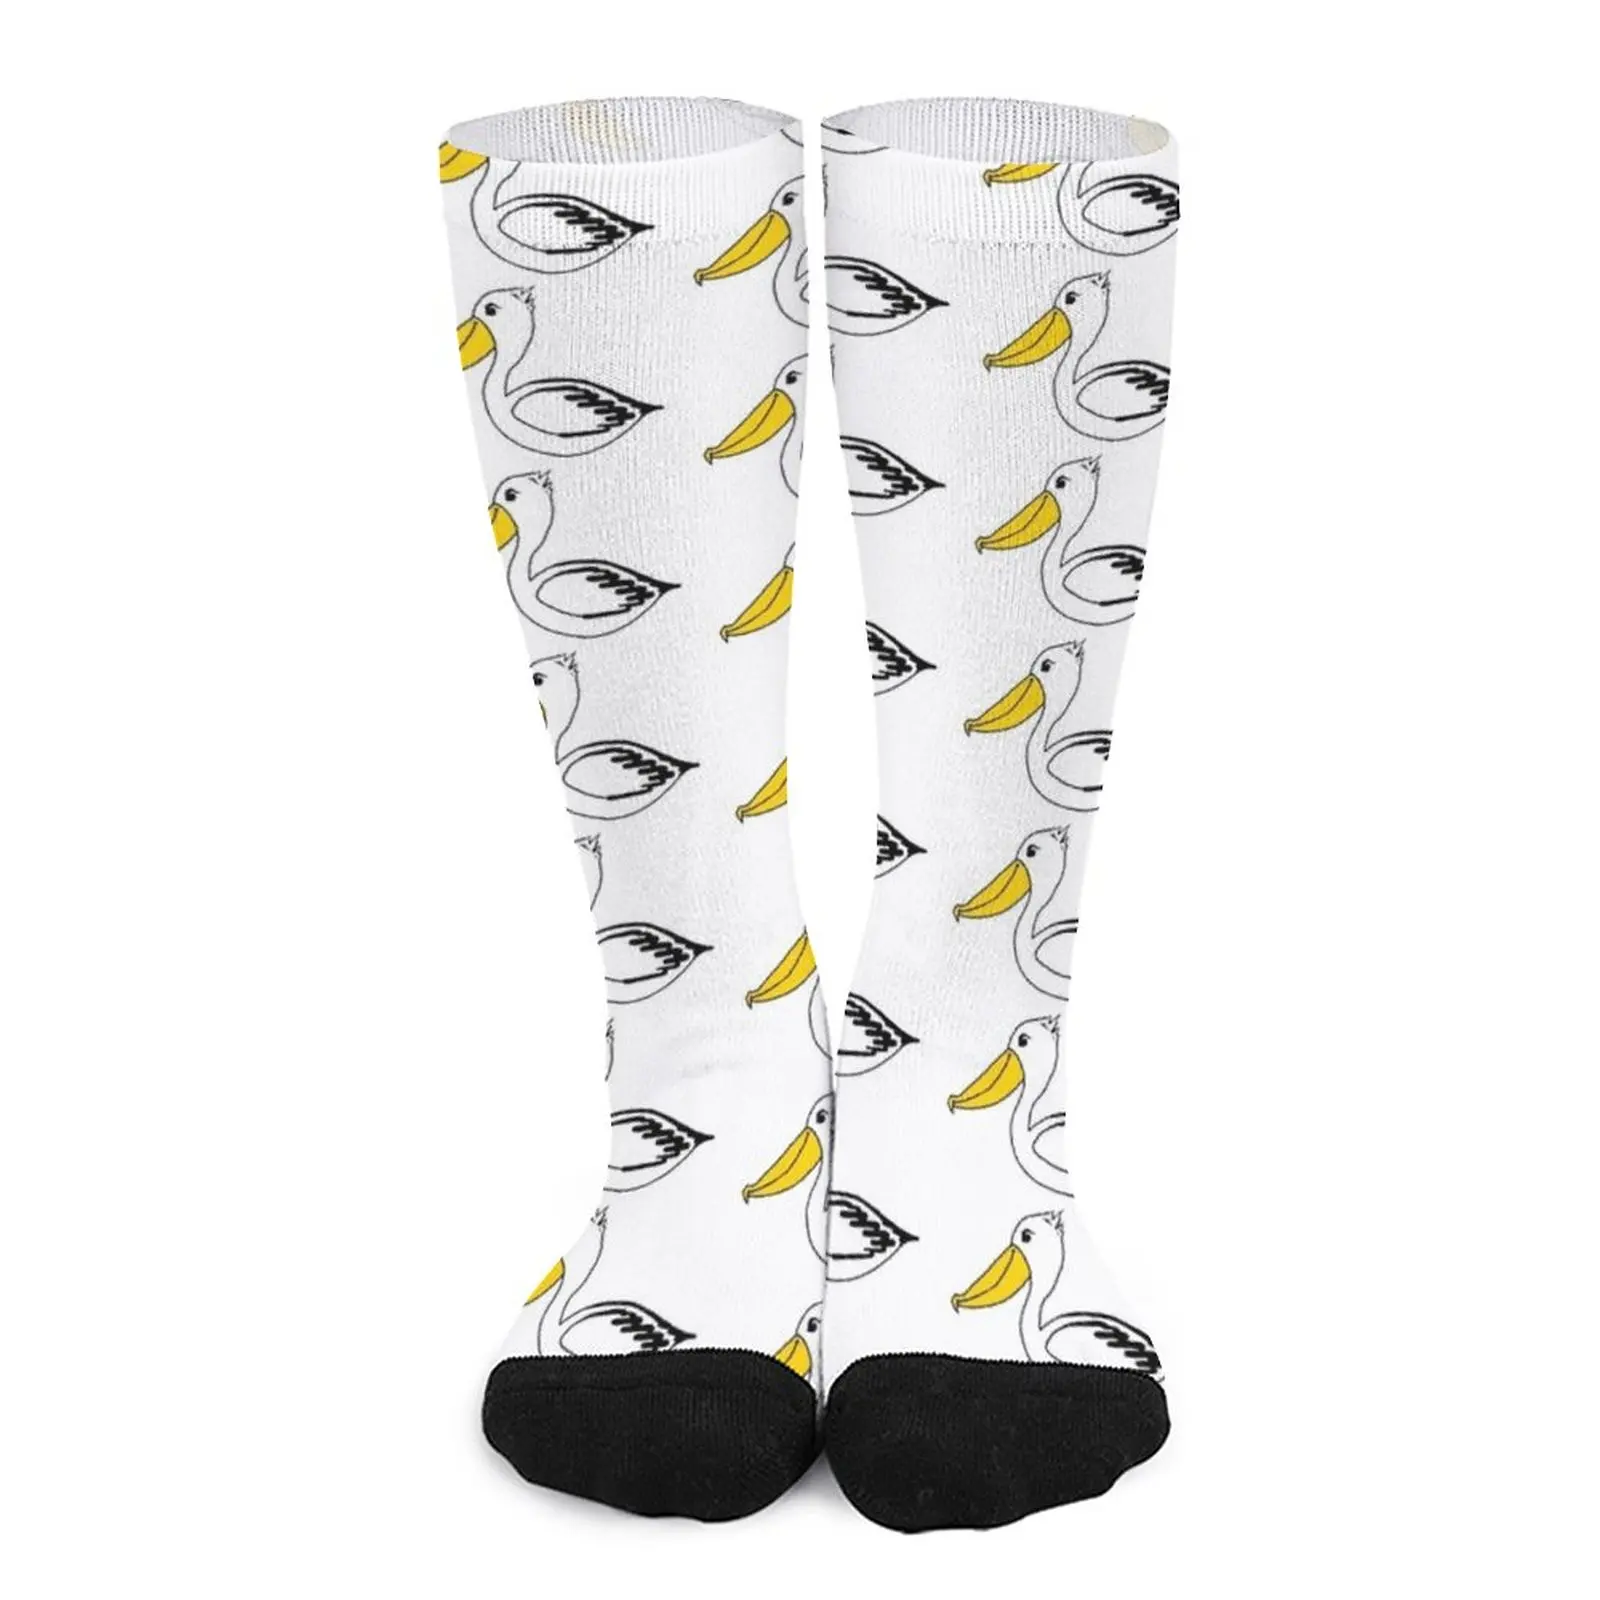 Pelican Socks socks for woman non-slip soccer stockings